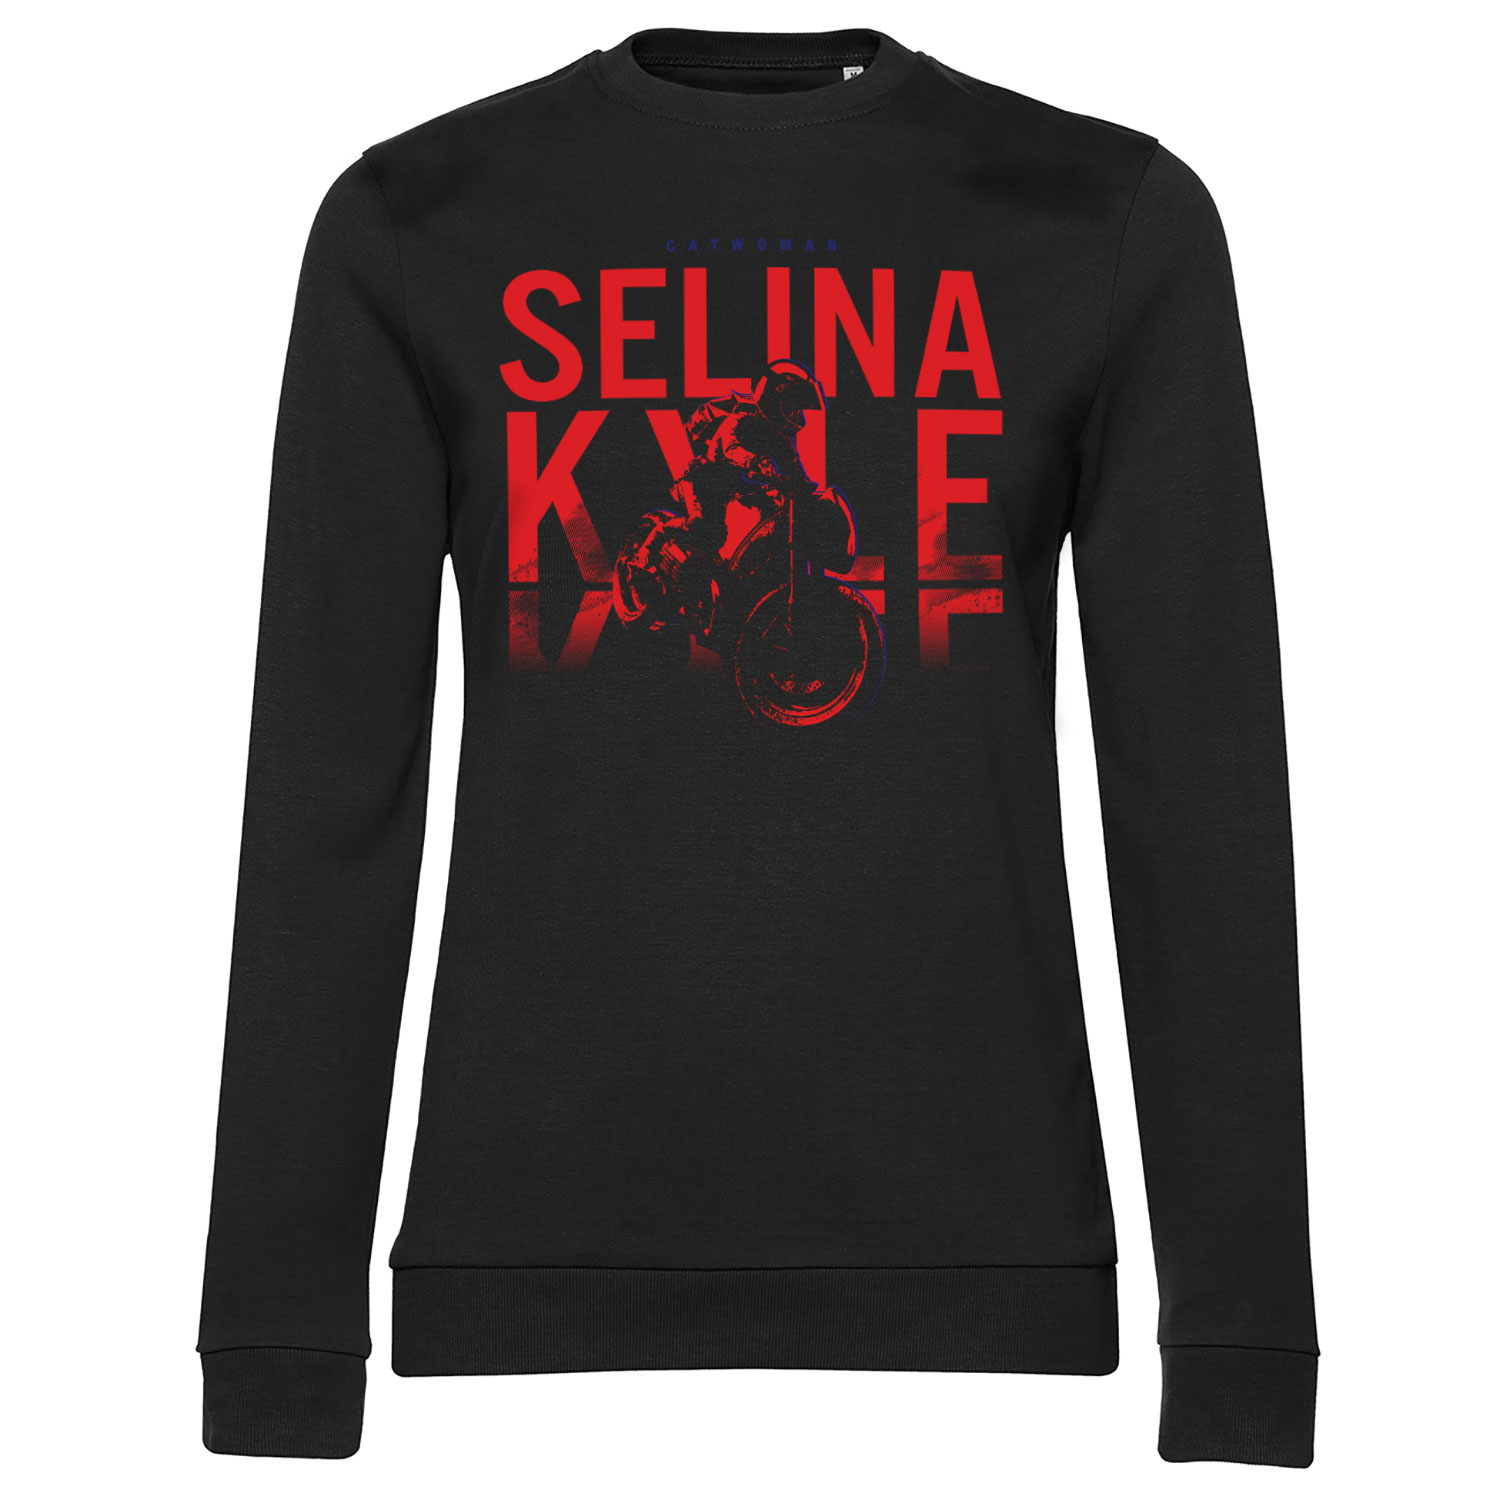 Selina Kyle is Catwoman Girly Sweatshirt